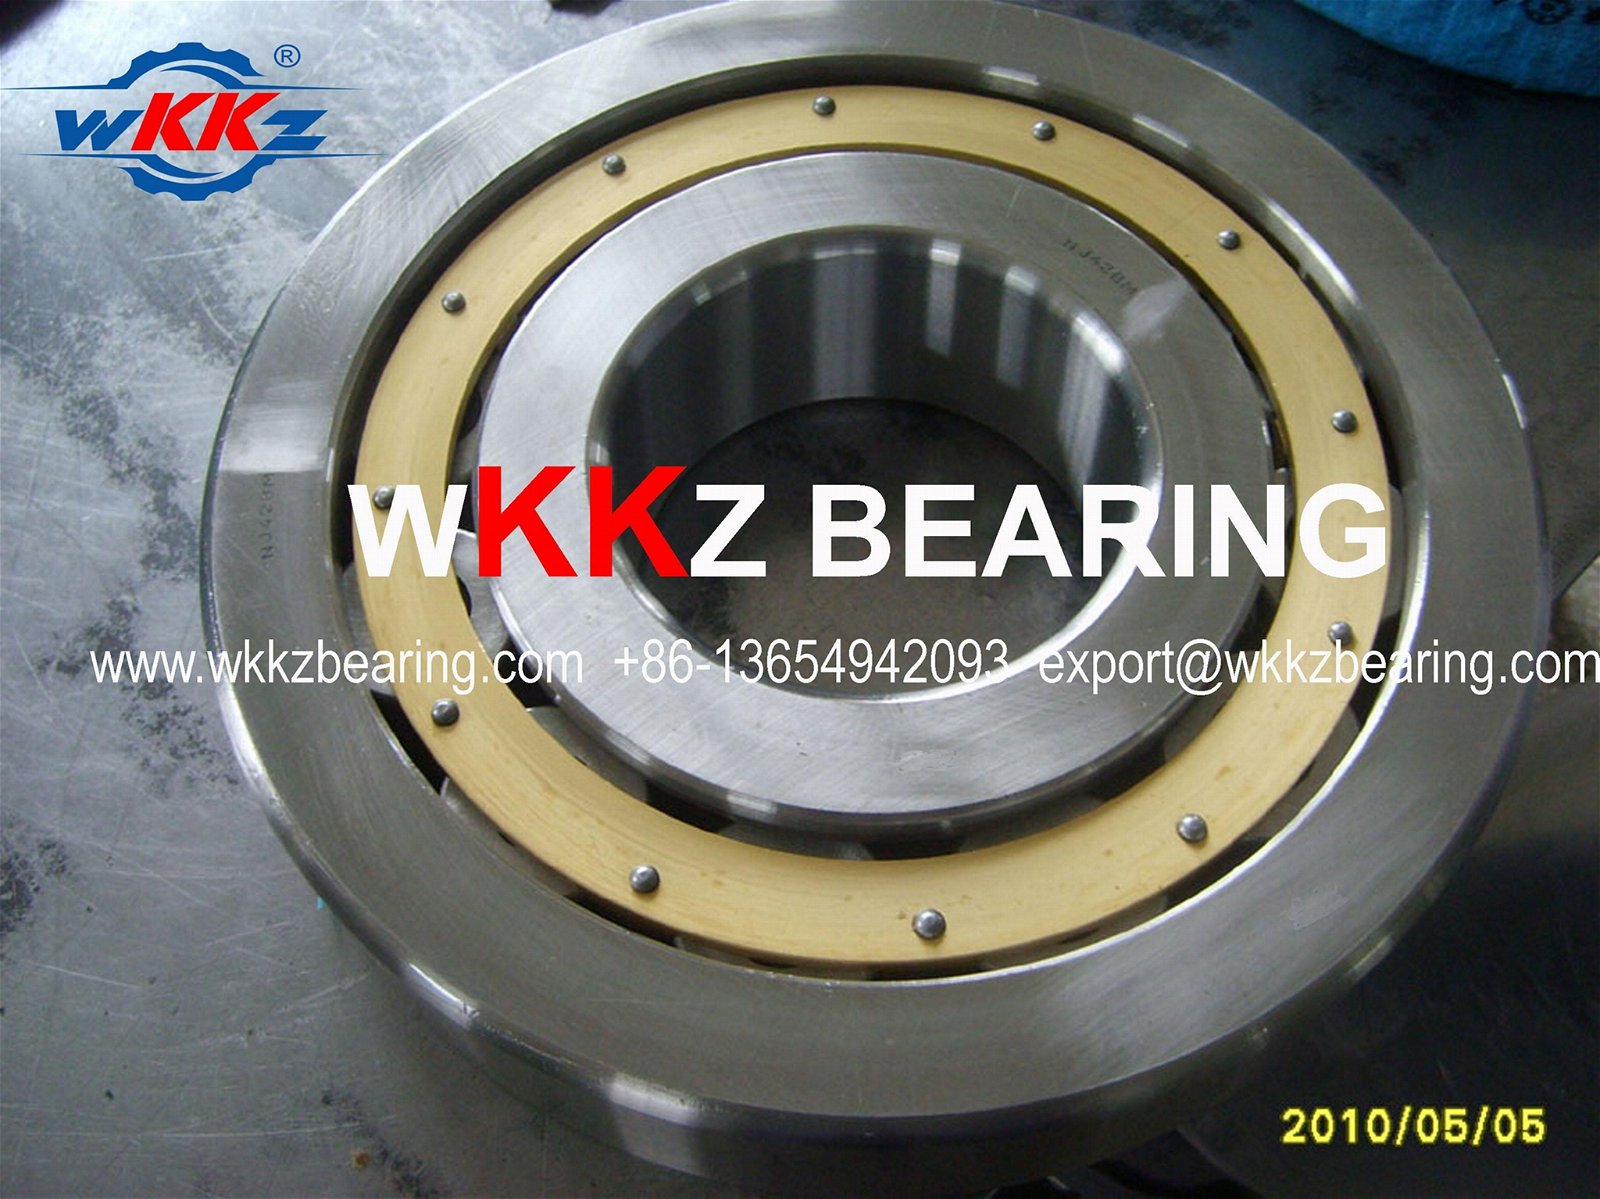 N315EMC3 Cylindrical roller bearing,WKKZ BEARING 1